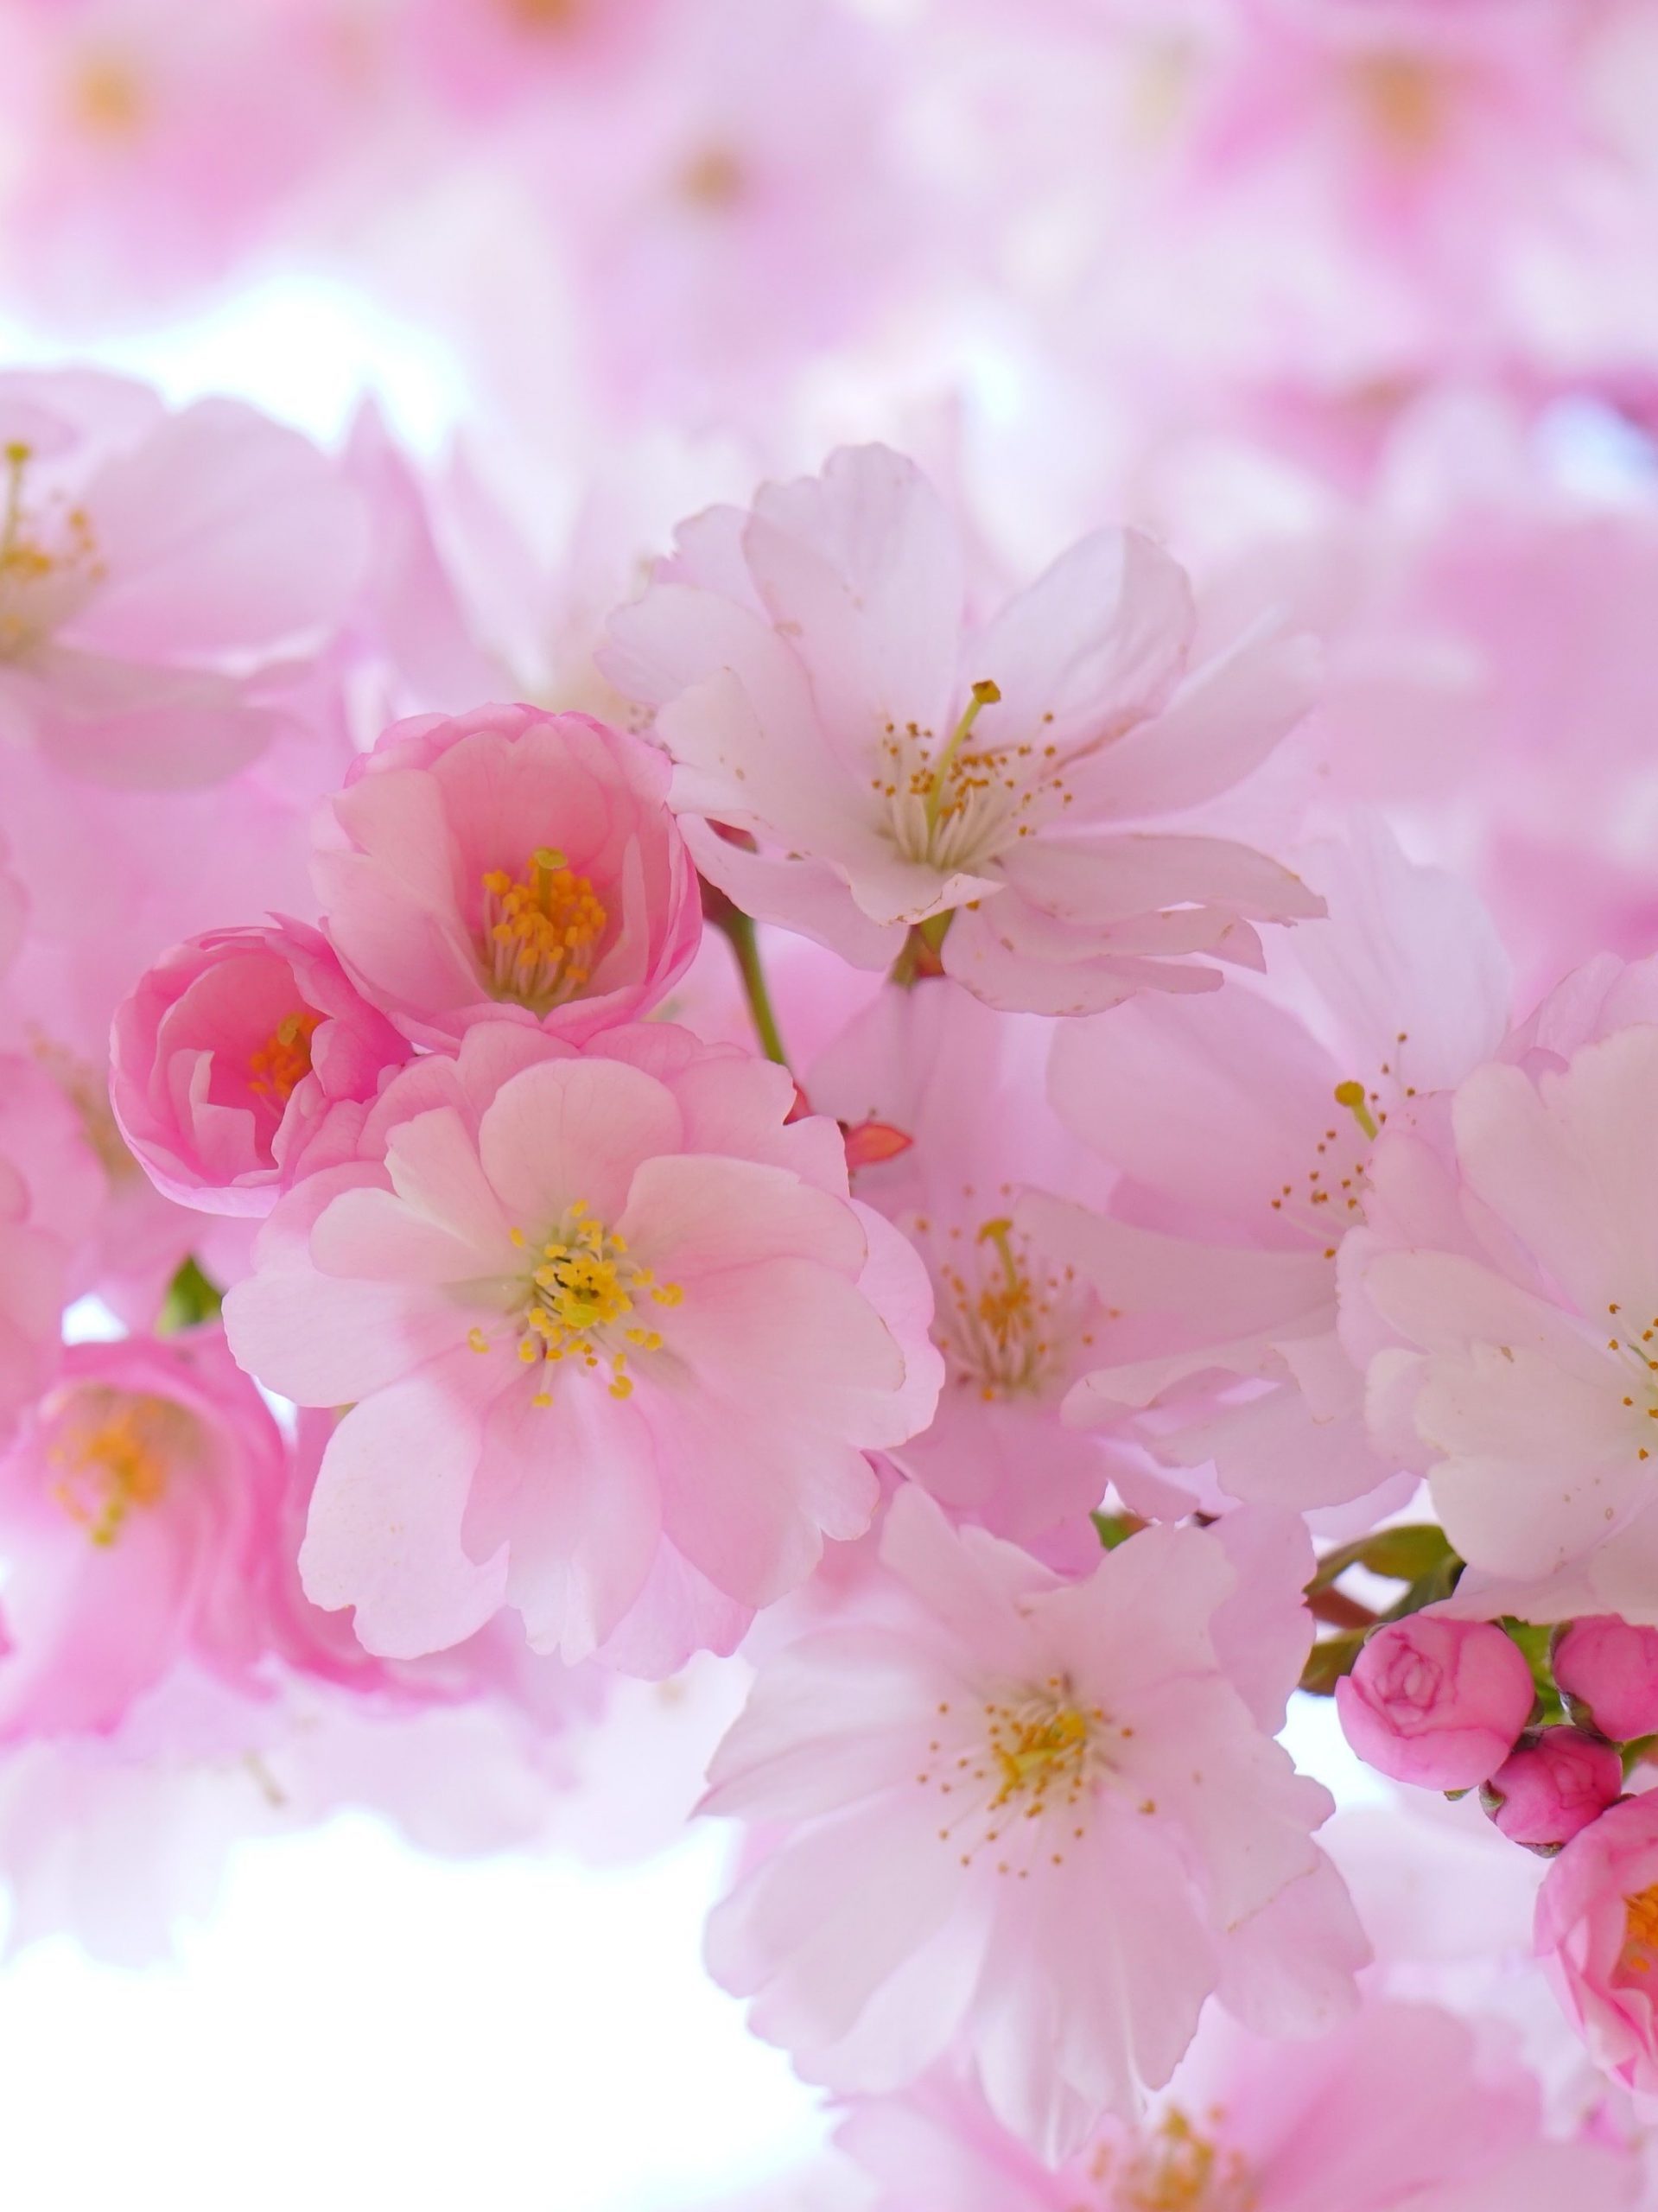 Cherry Blossom Wallpaper - EnJpg